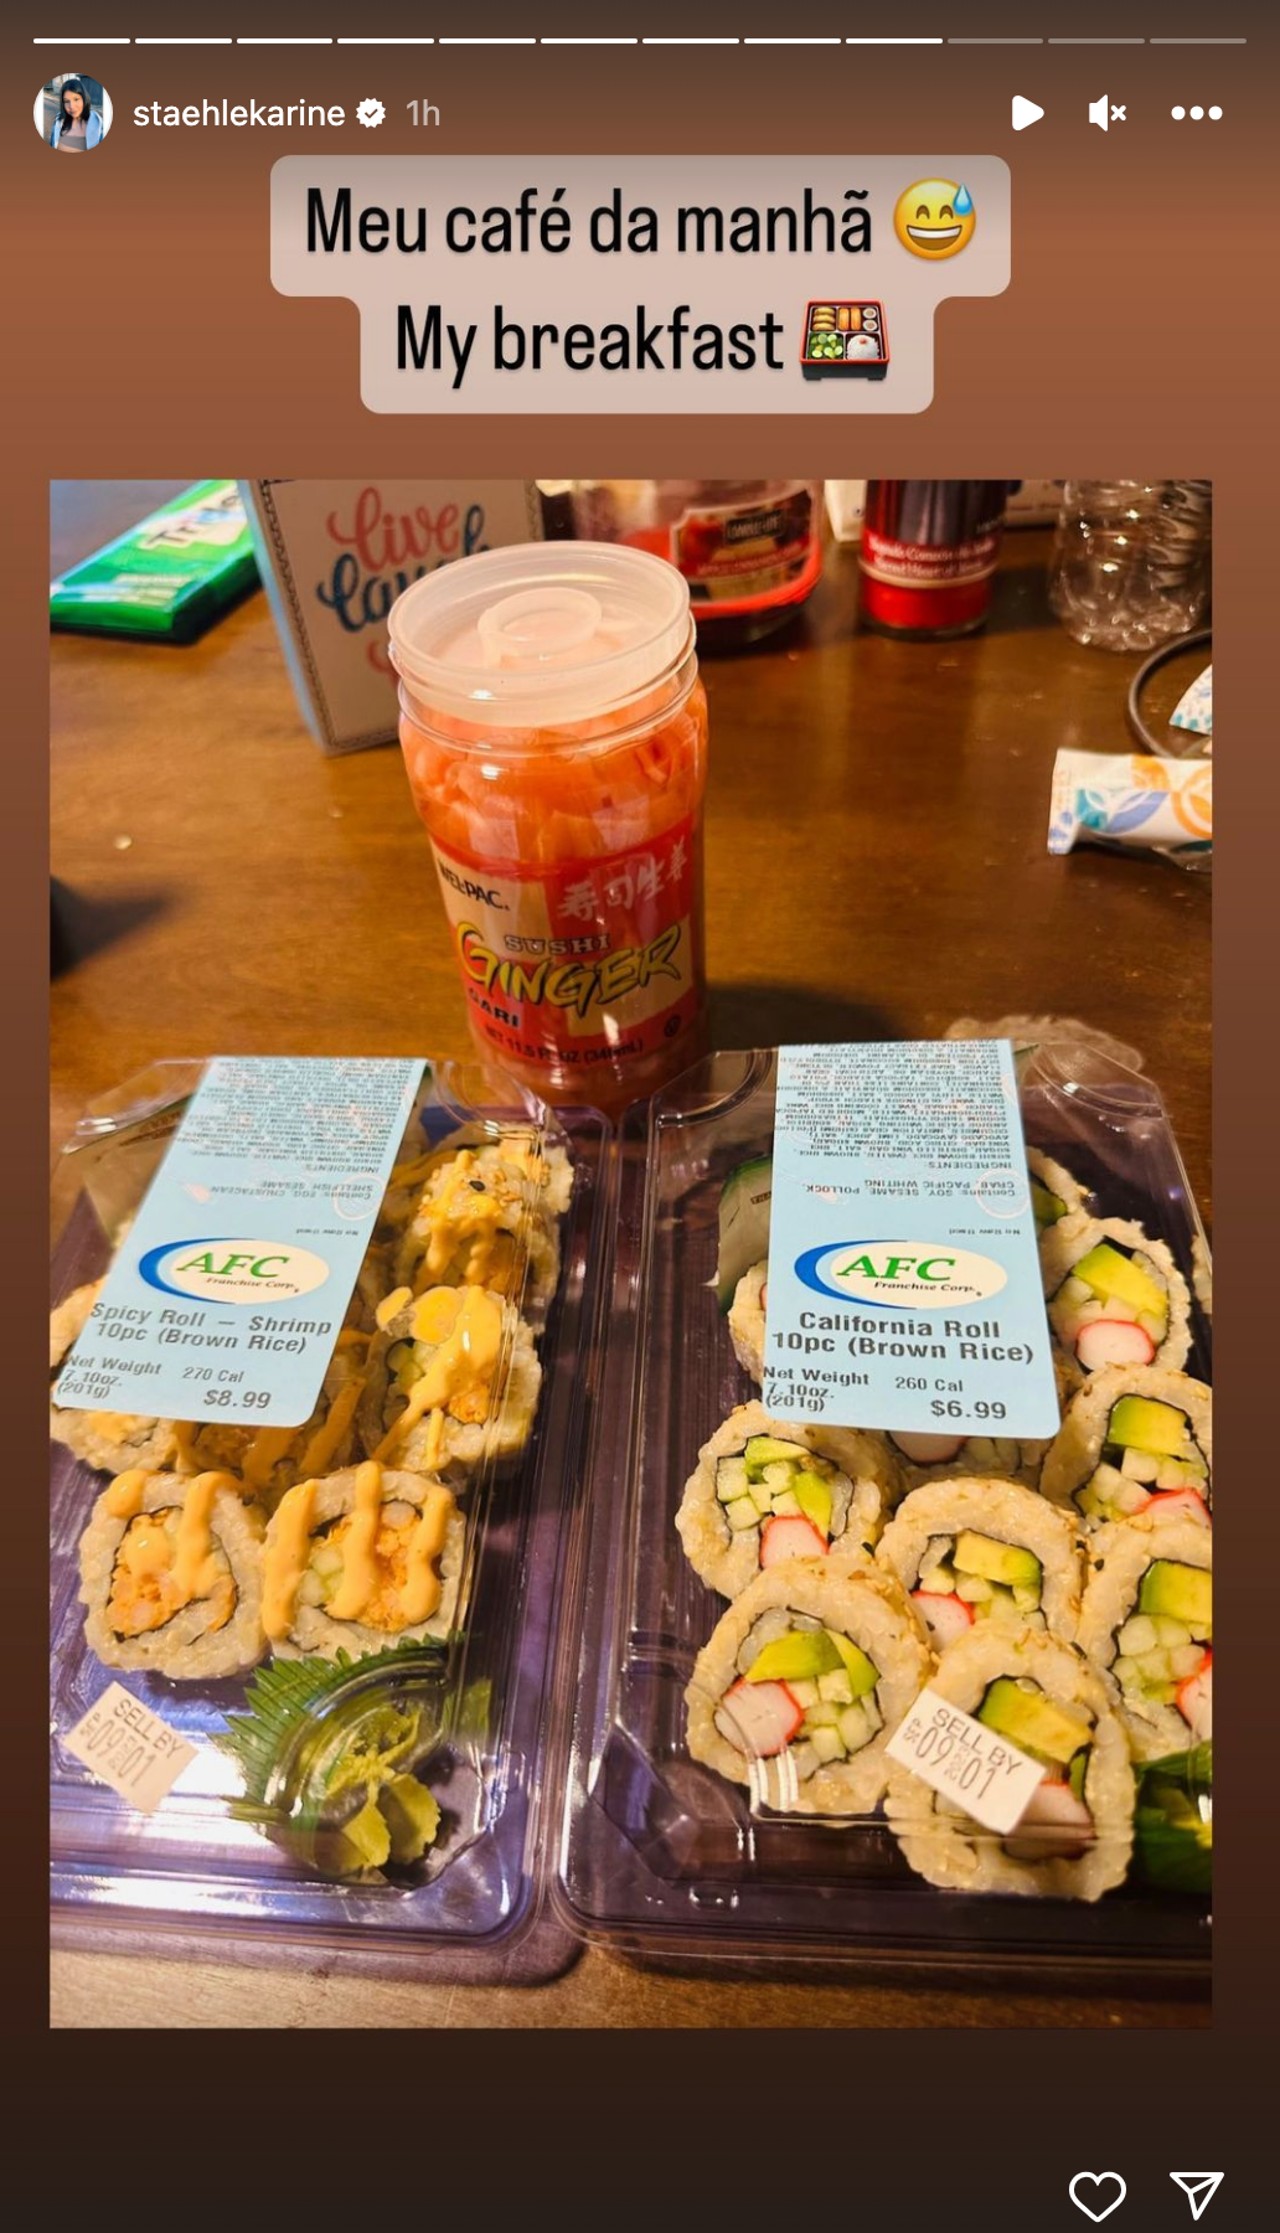 Karine postet Fotos von Sushi